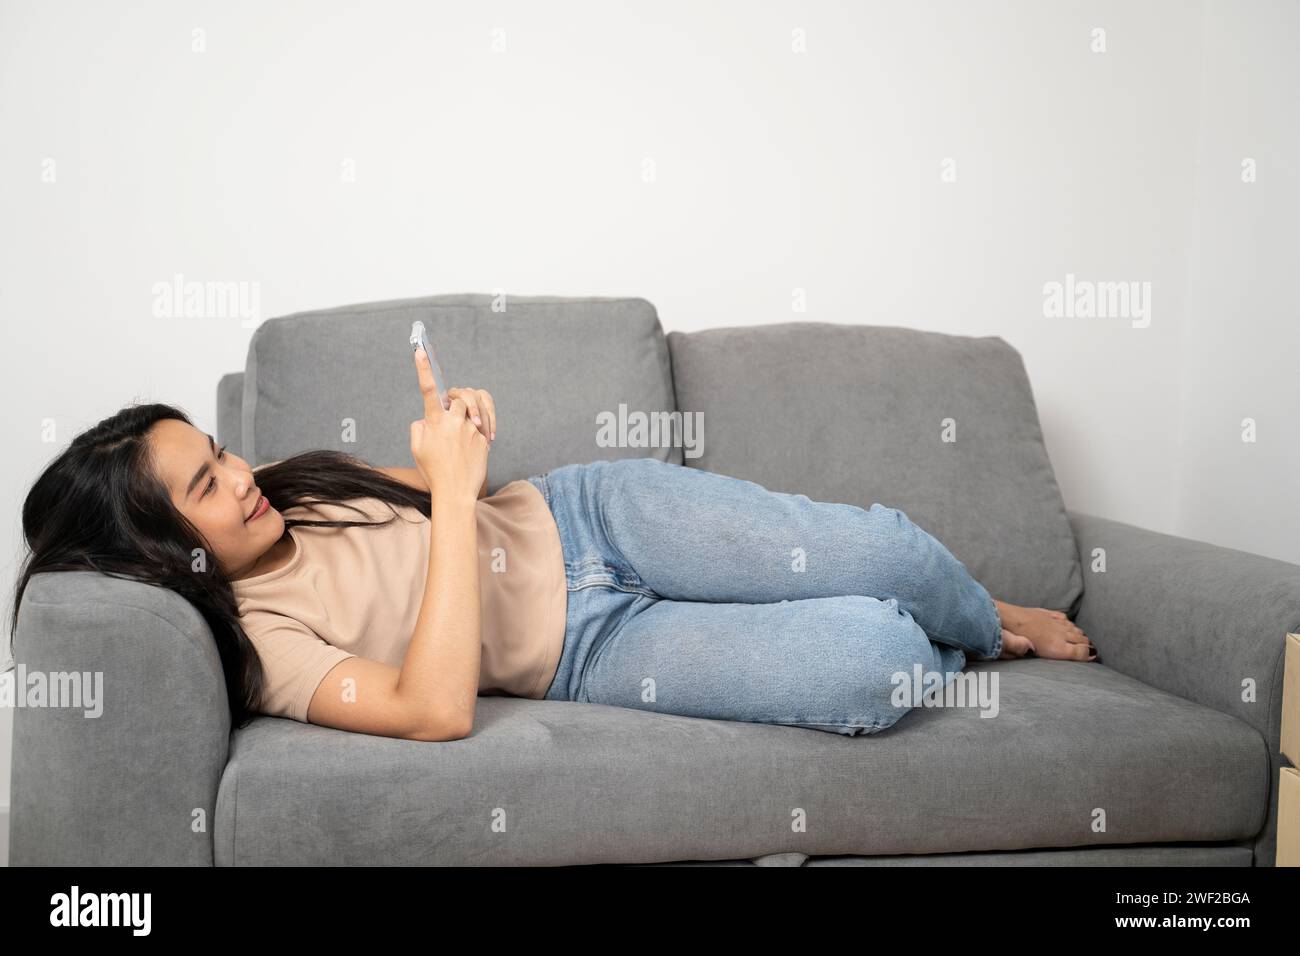 Asiatische junge Frau mit Handy, die auf dem Sofa liegt. Stockfoto